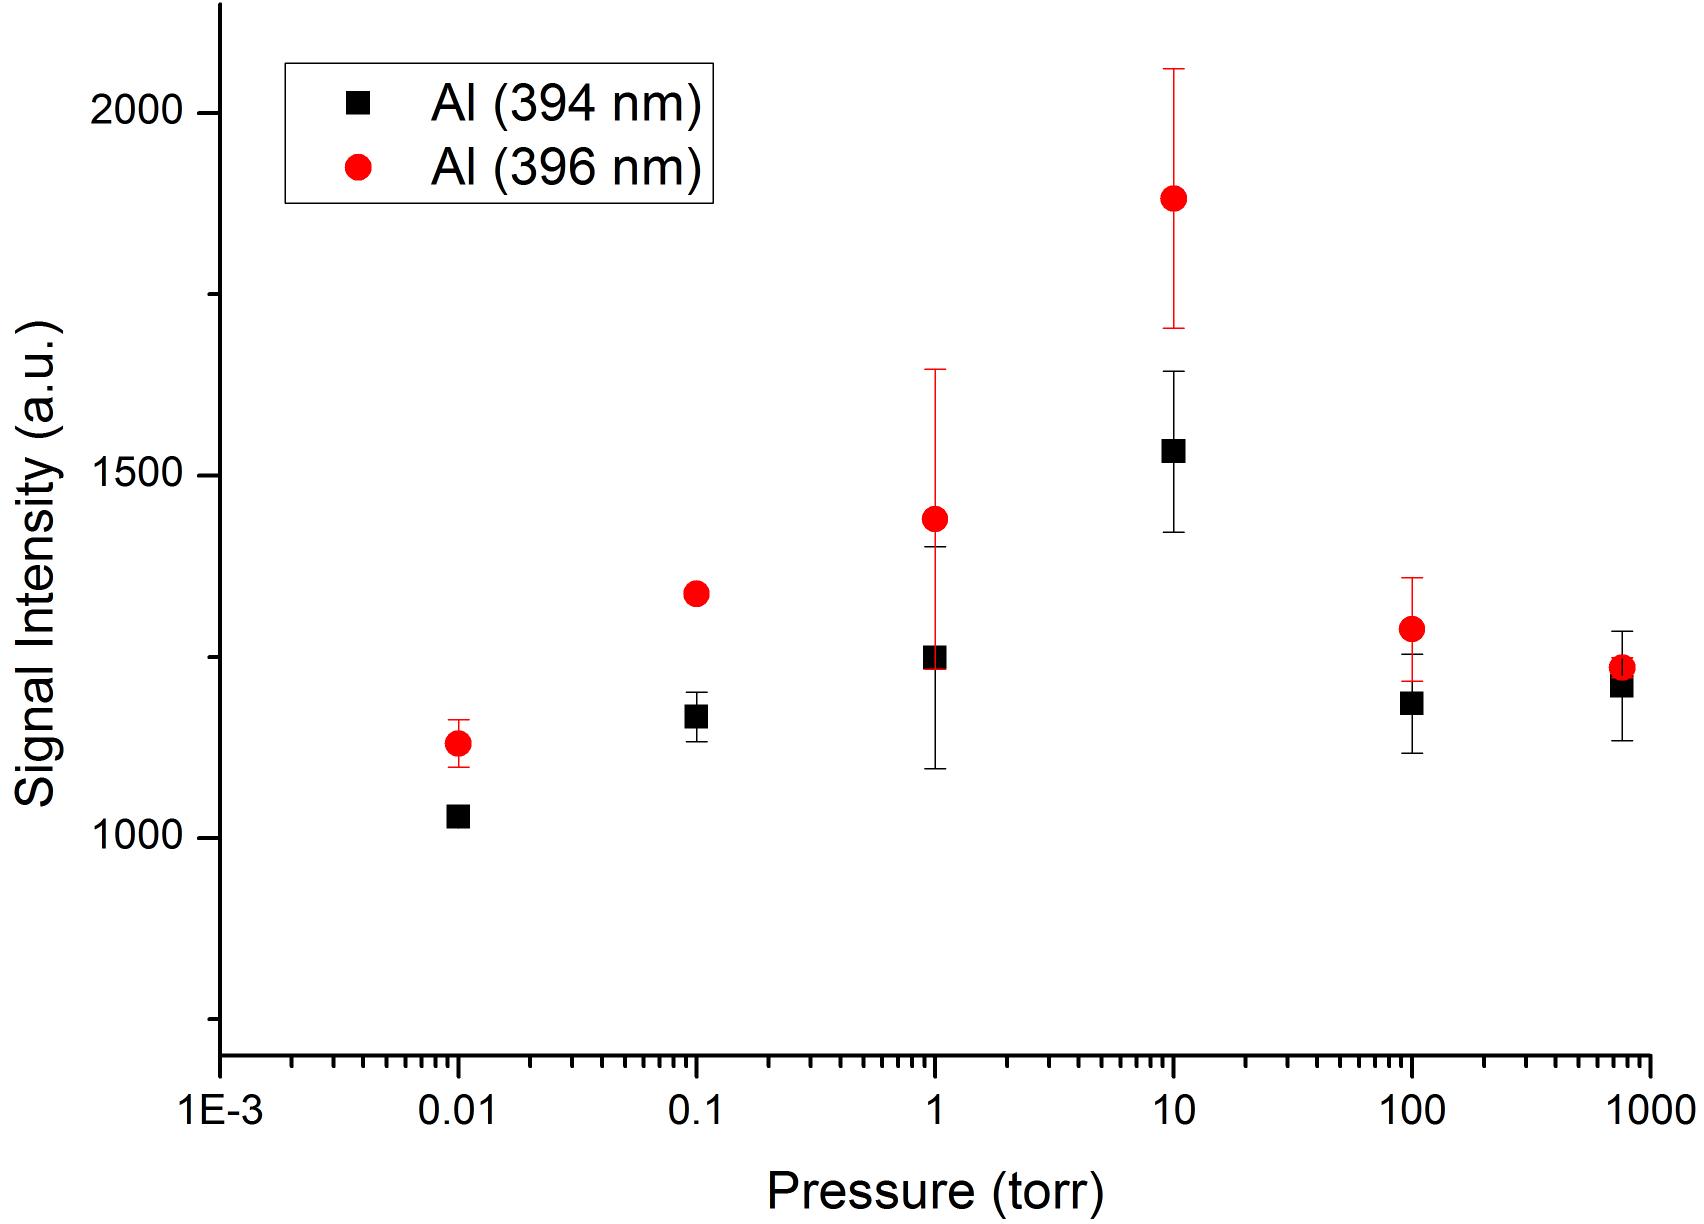 알루미늄 샘플의 압력별 신호 세기 비교